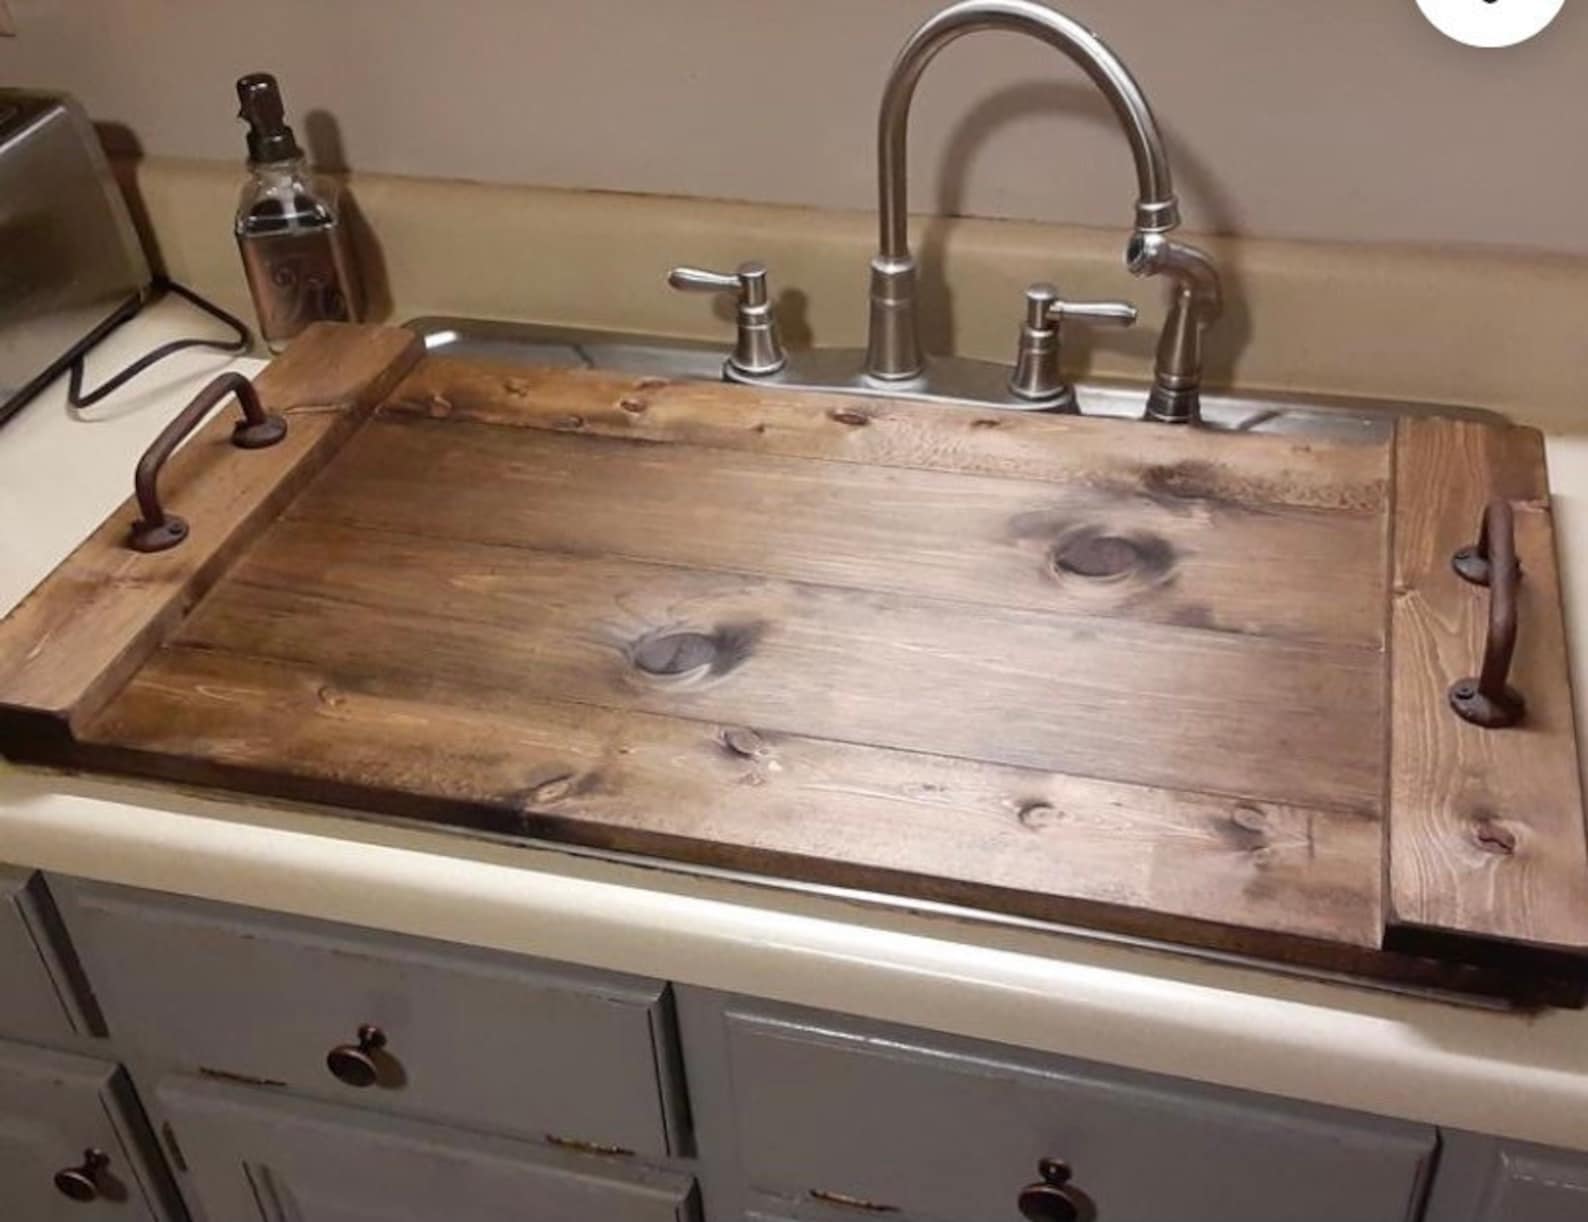 backsplash sink cover for wall kitchen